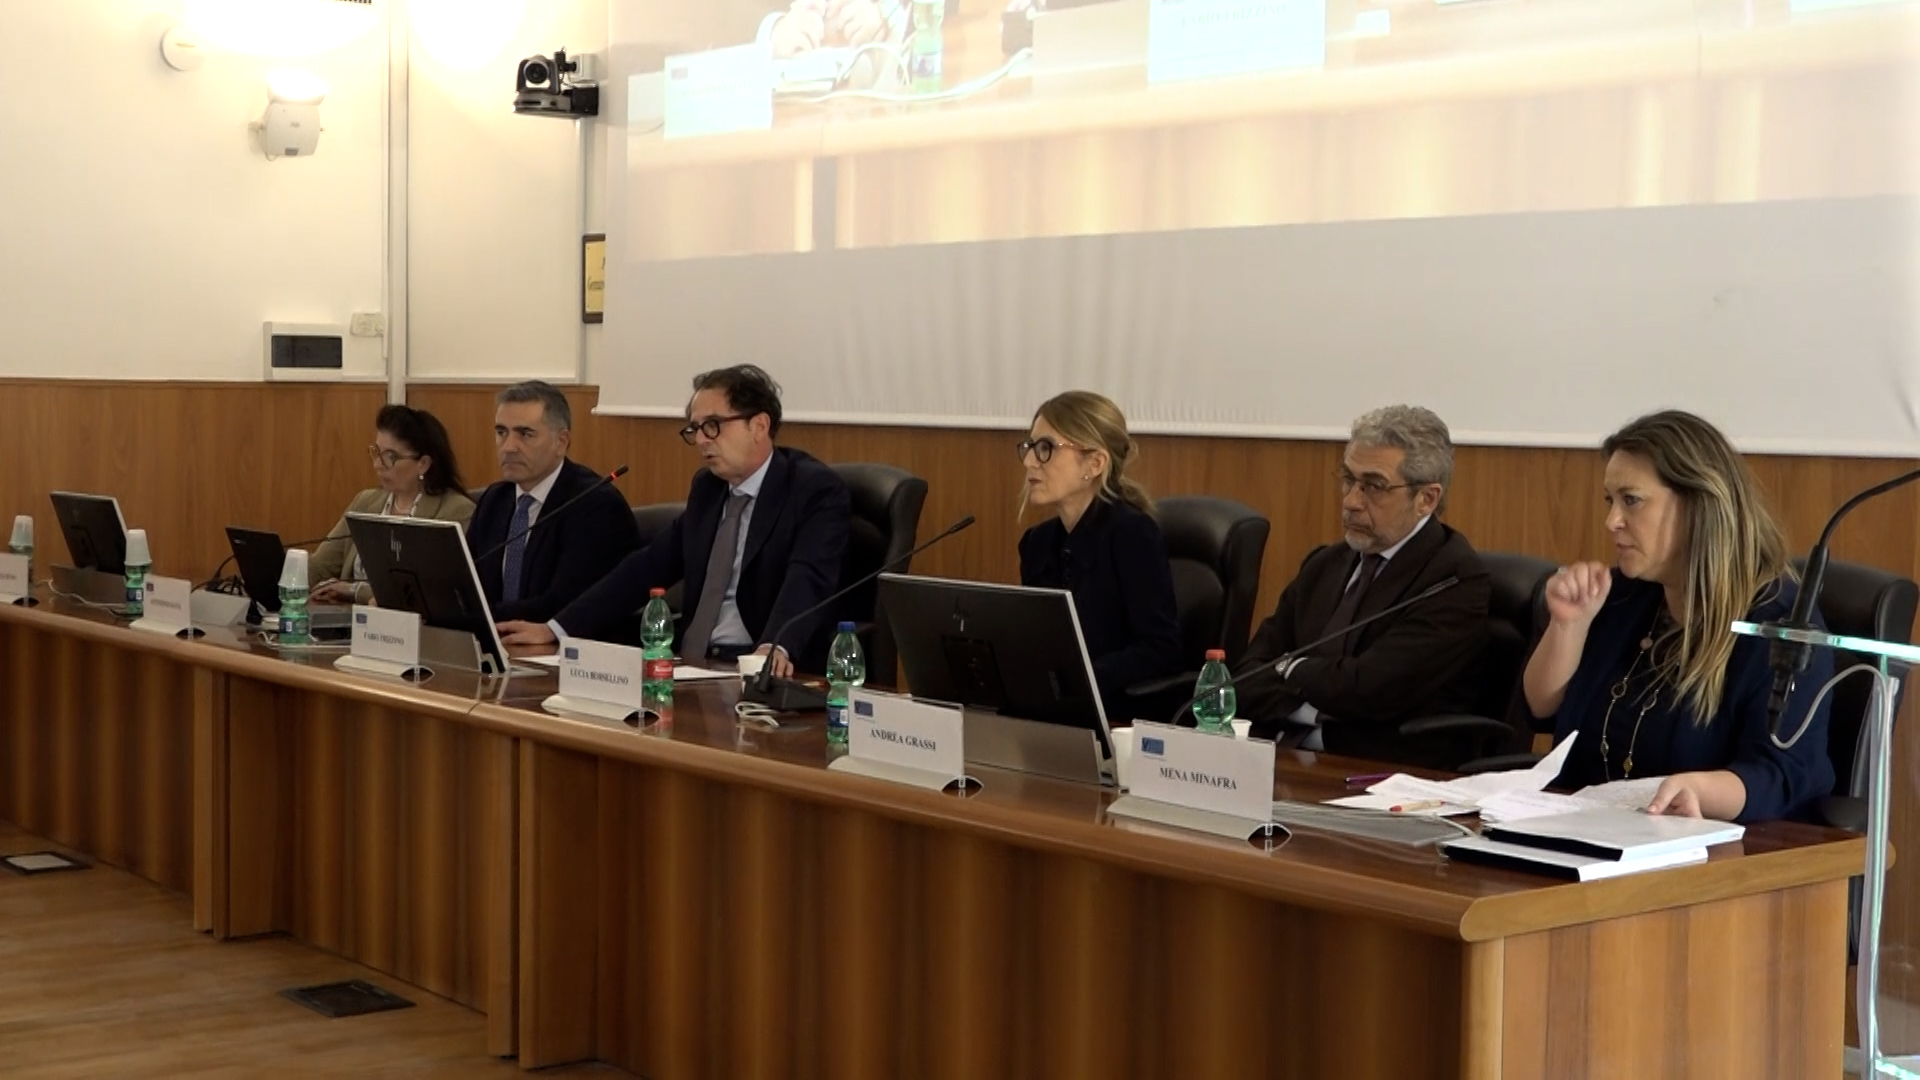 Università Vanvitelli Dipartimento di Giurisprudenza: le testimonianze di Lucia Borsellino e Antonino Salvia